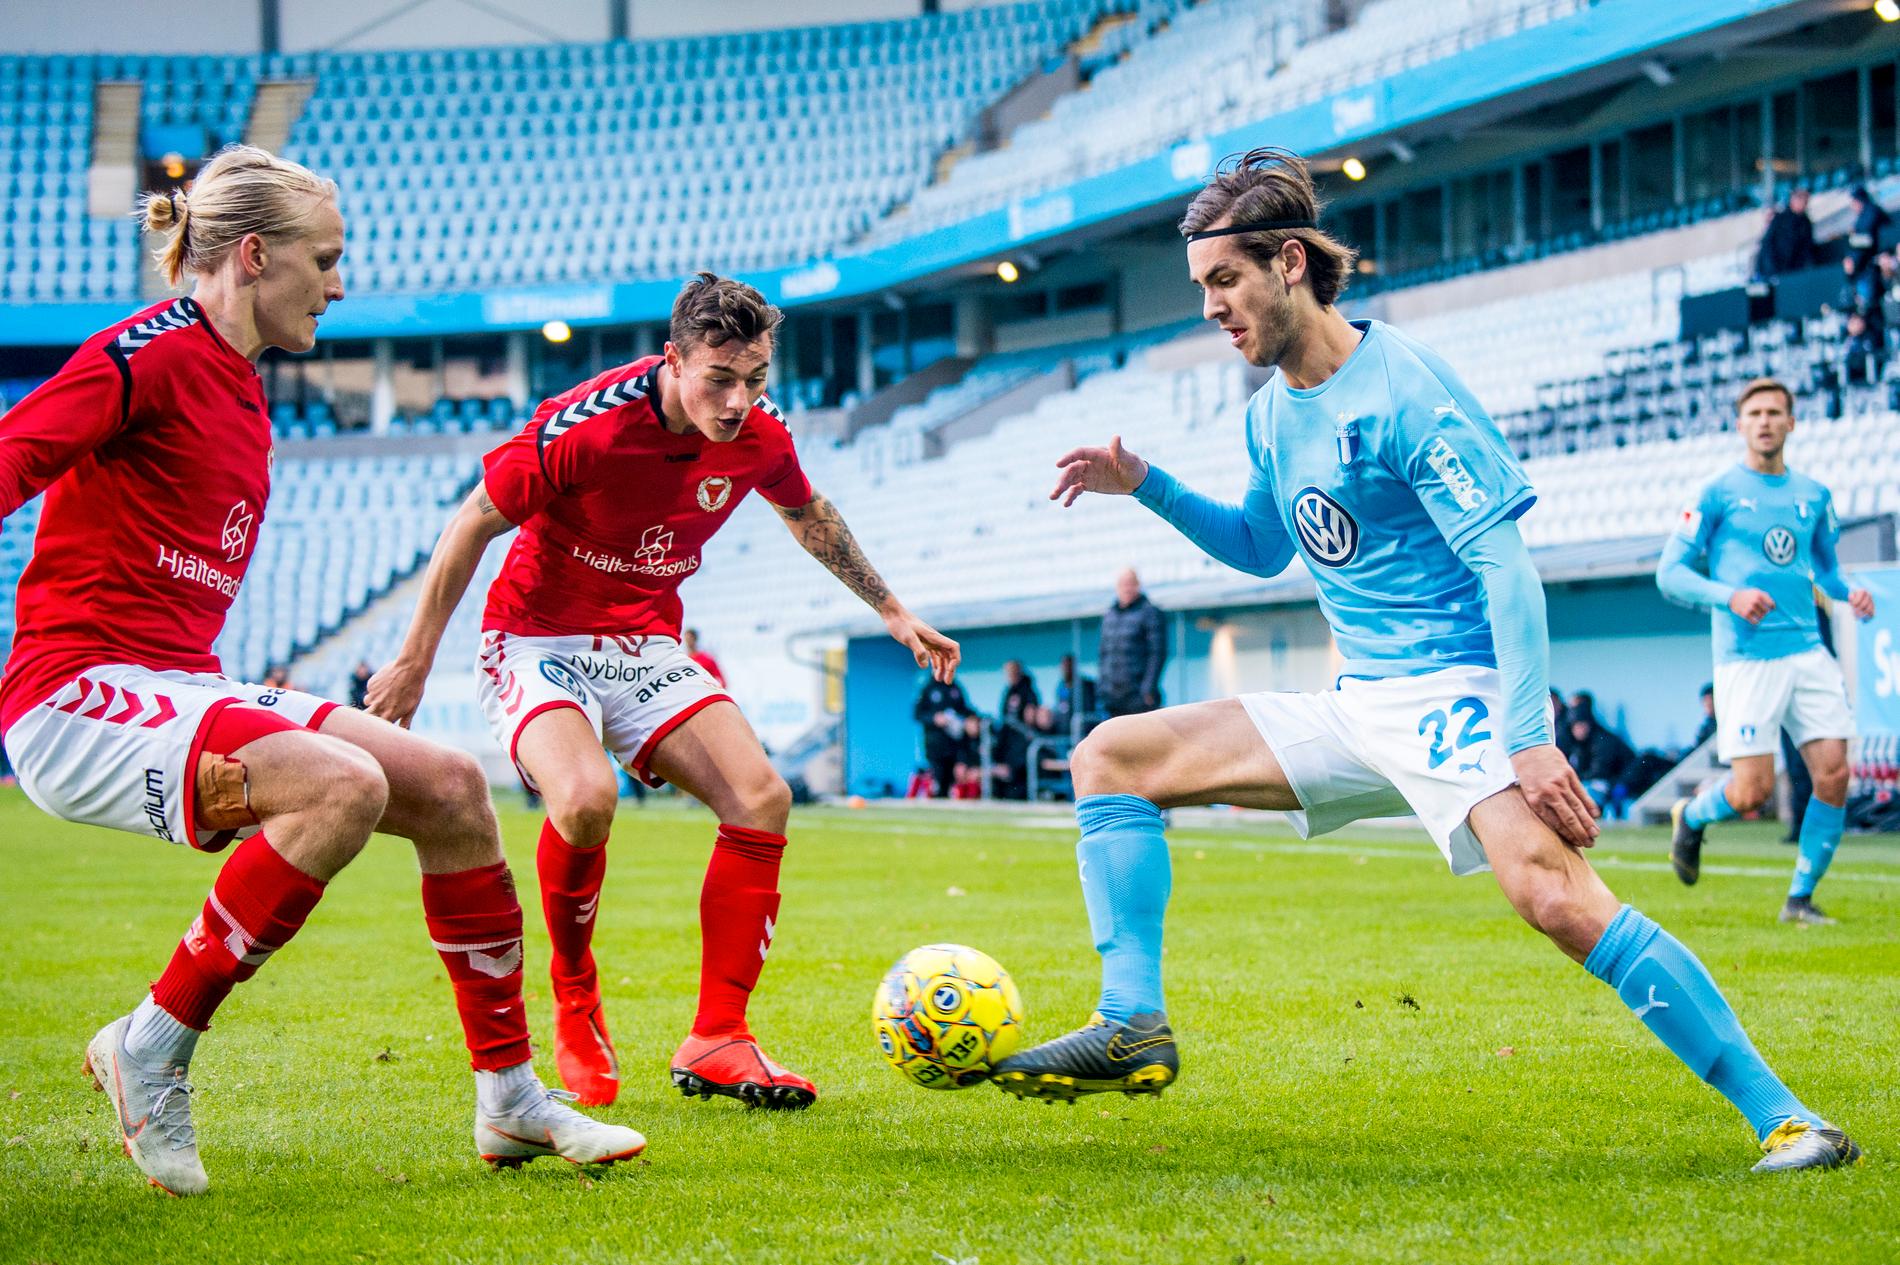 Adi Nalic hann spela en match på Stadion med Malmö FF - träningsmatchen mot Kalmar FF i våras.